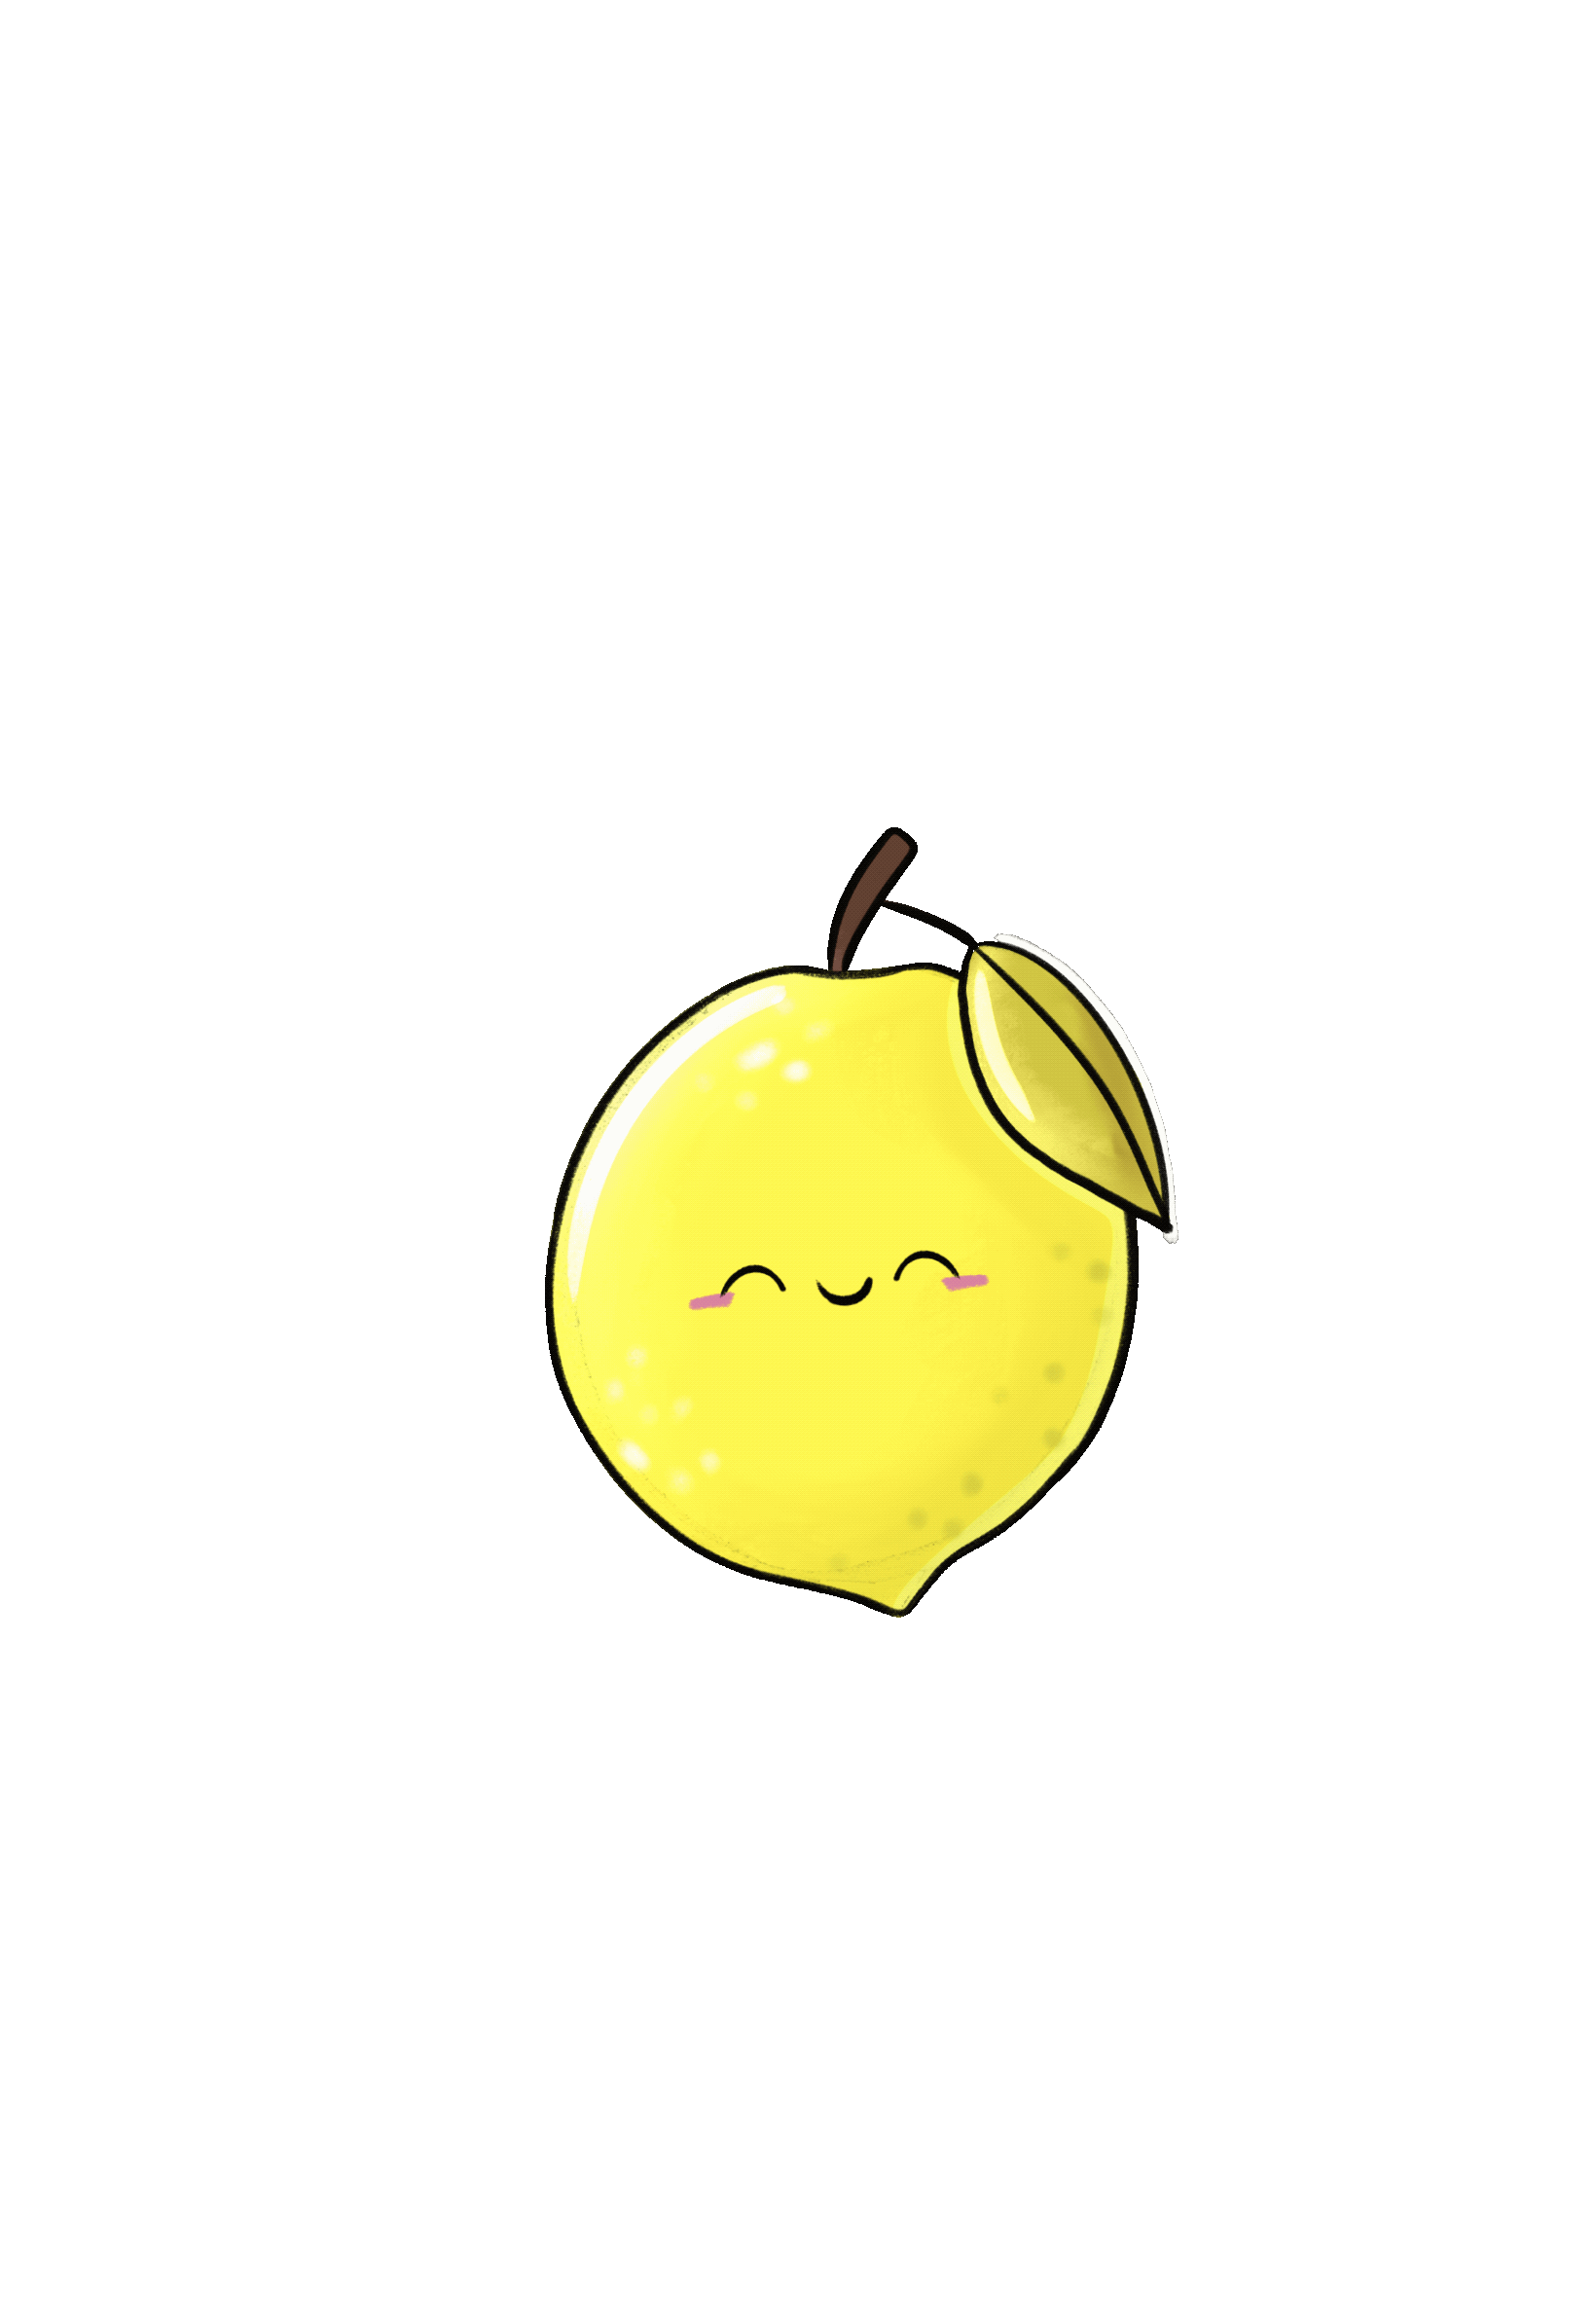 Kawaii lemon gif animation sticker loop whimsical